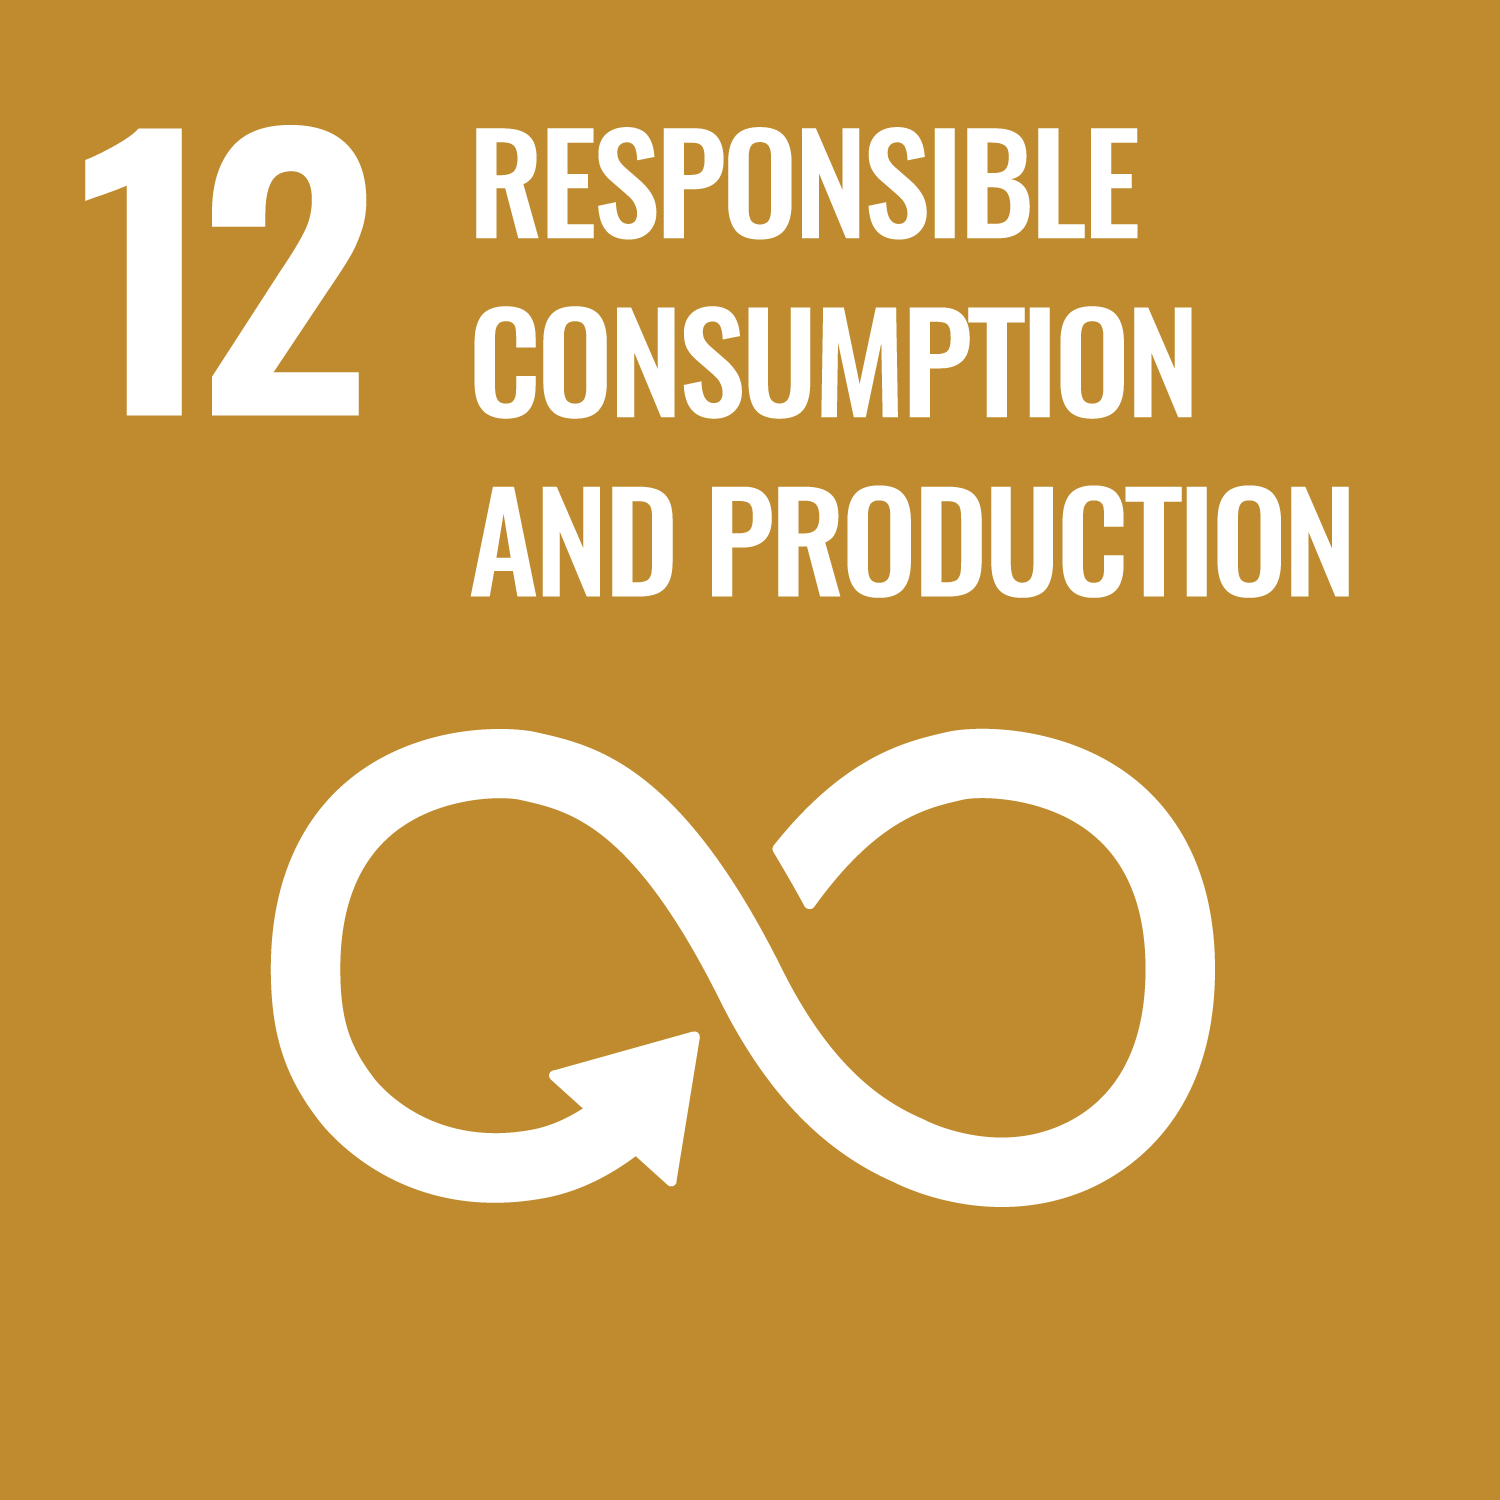 UN SDG 12 image